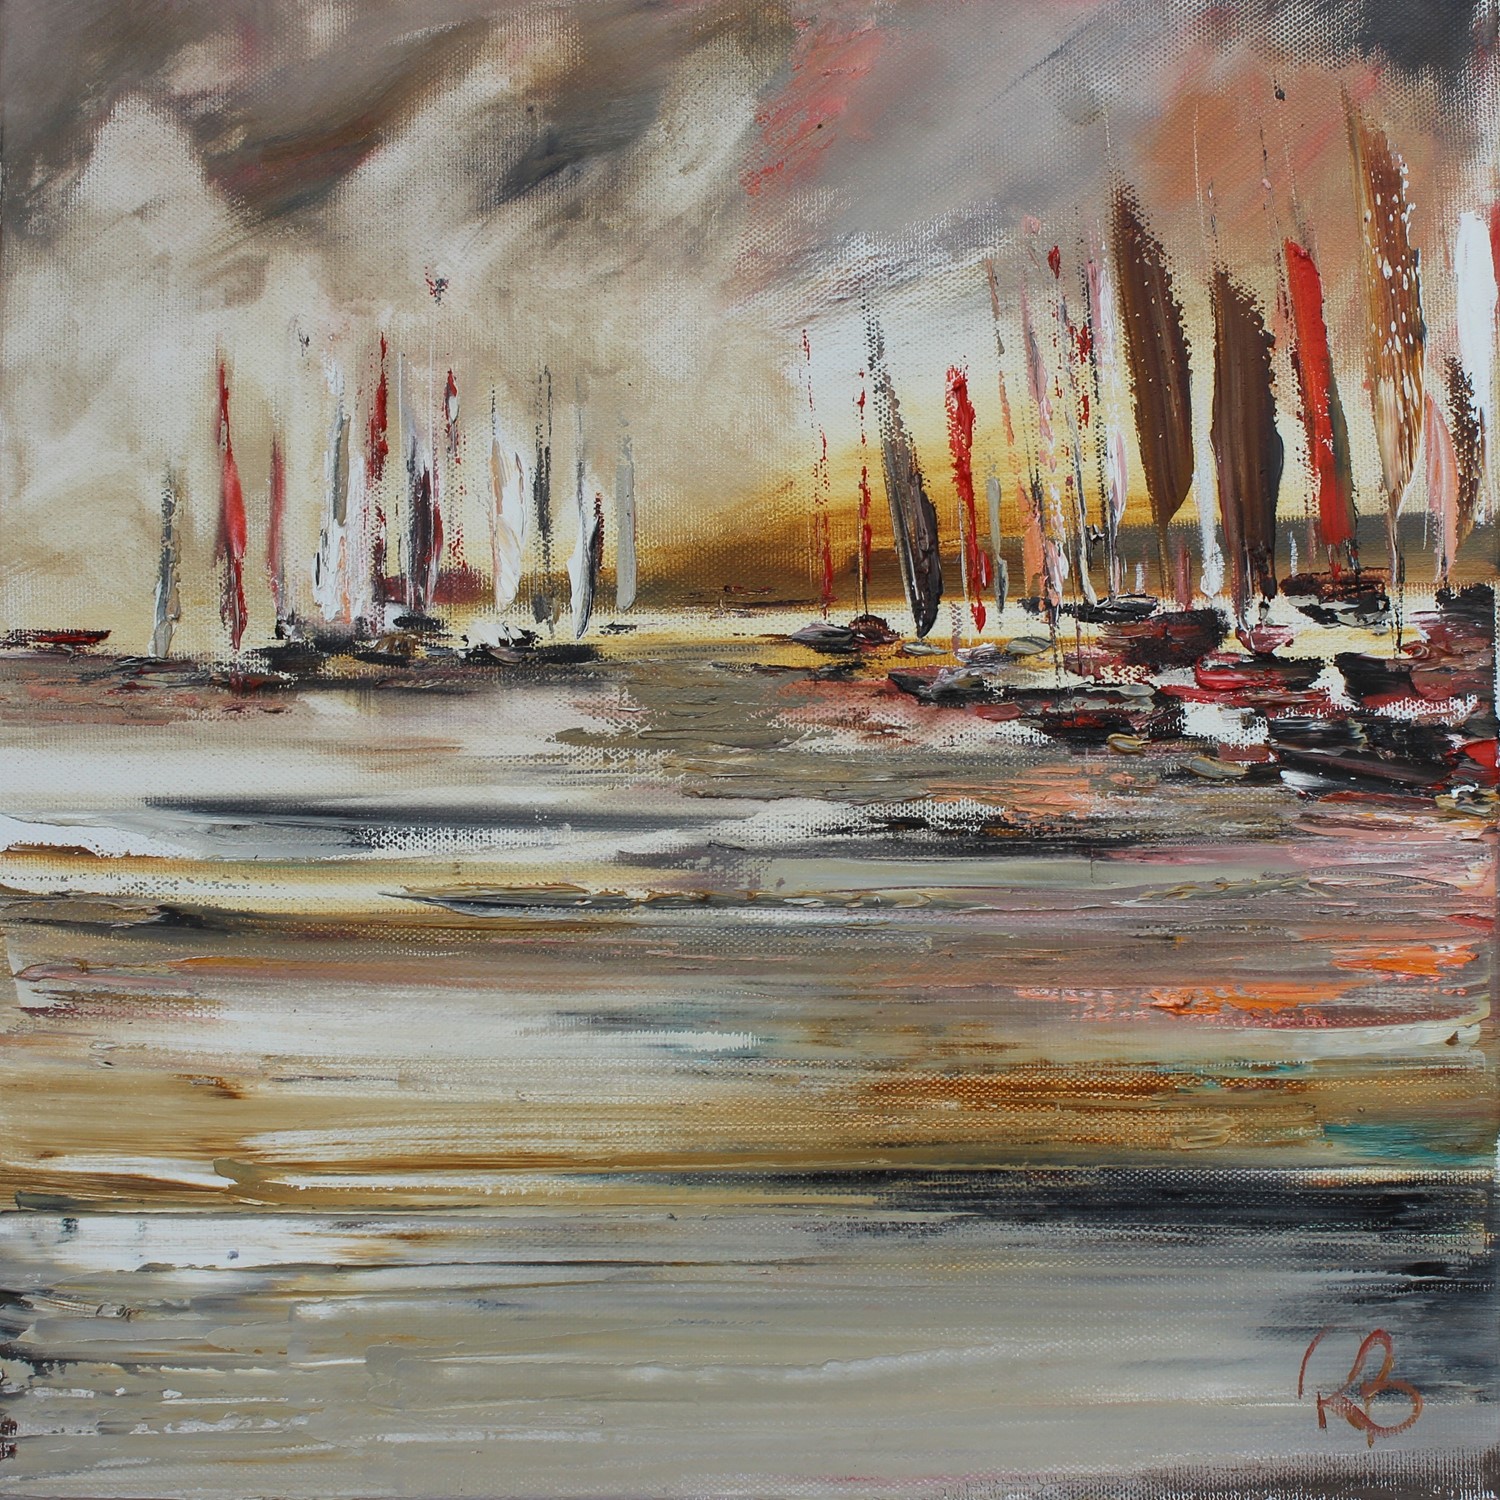 'An Evening Ashore' by artist Rosanne Barr